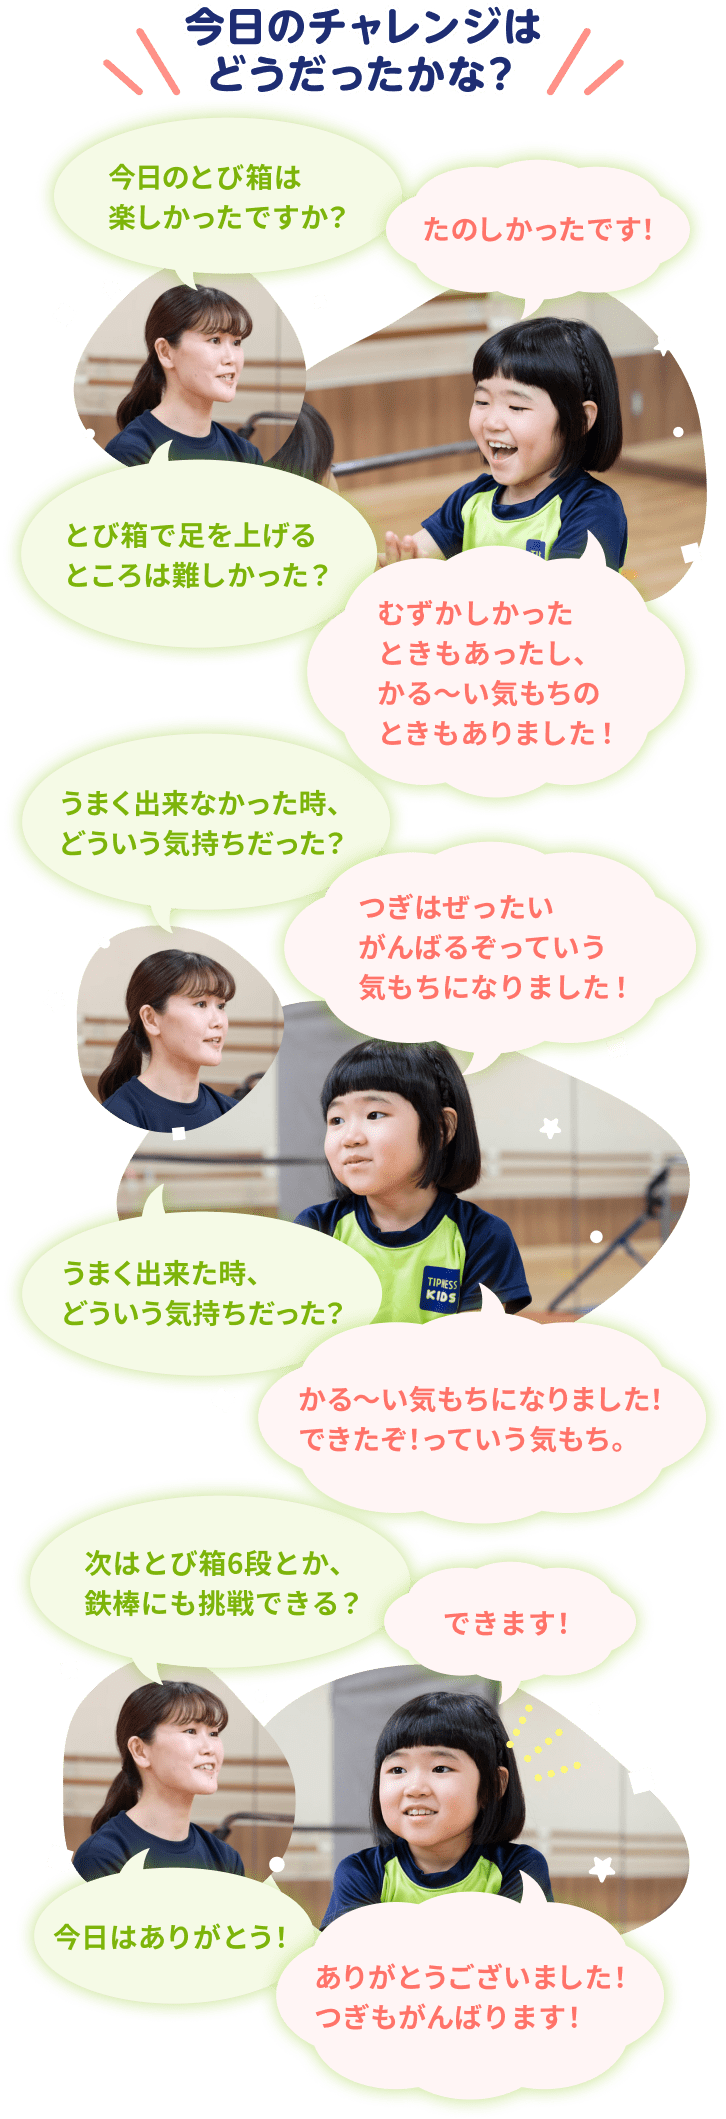 コーチと柚乃ちゃんの会話